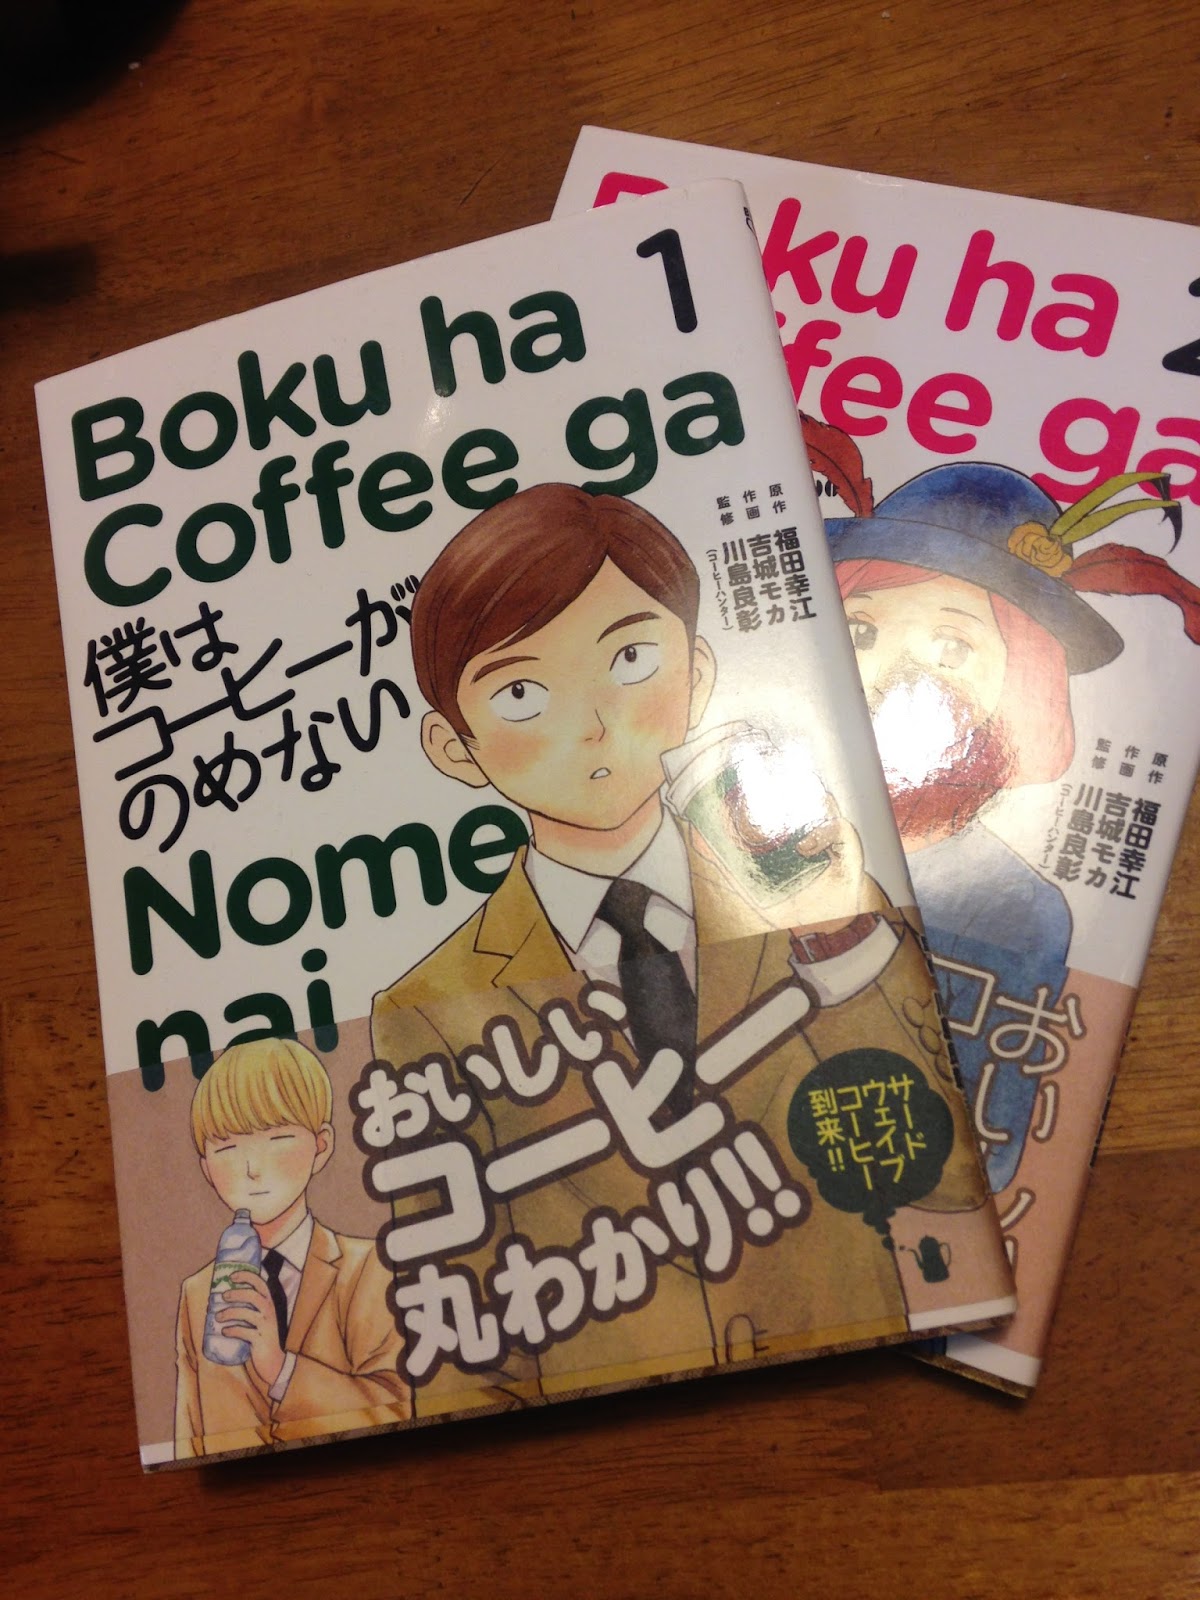 豆男のコーヒー飲み比べ: 漫画「僕はコーヒーがのめない」を読んでみた感想